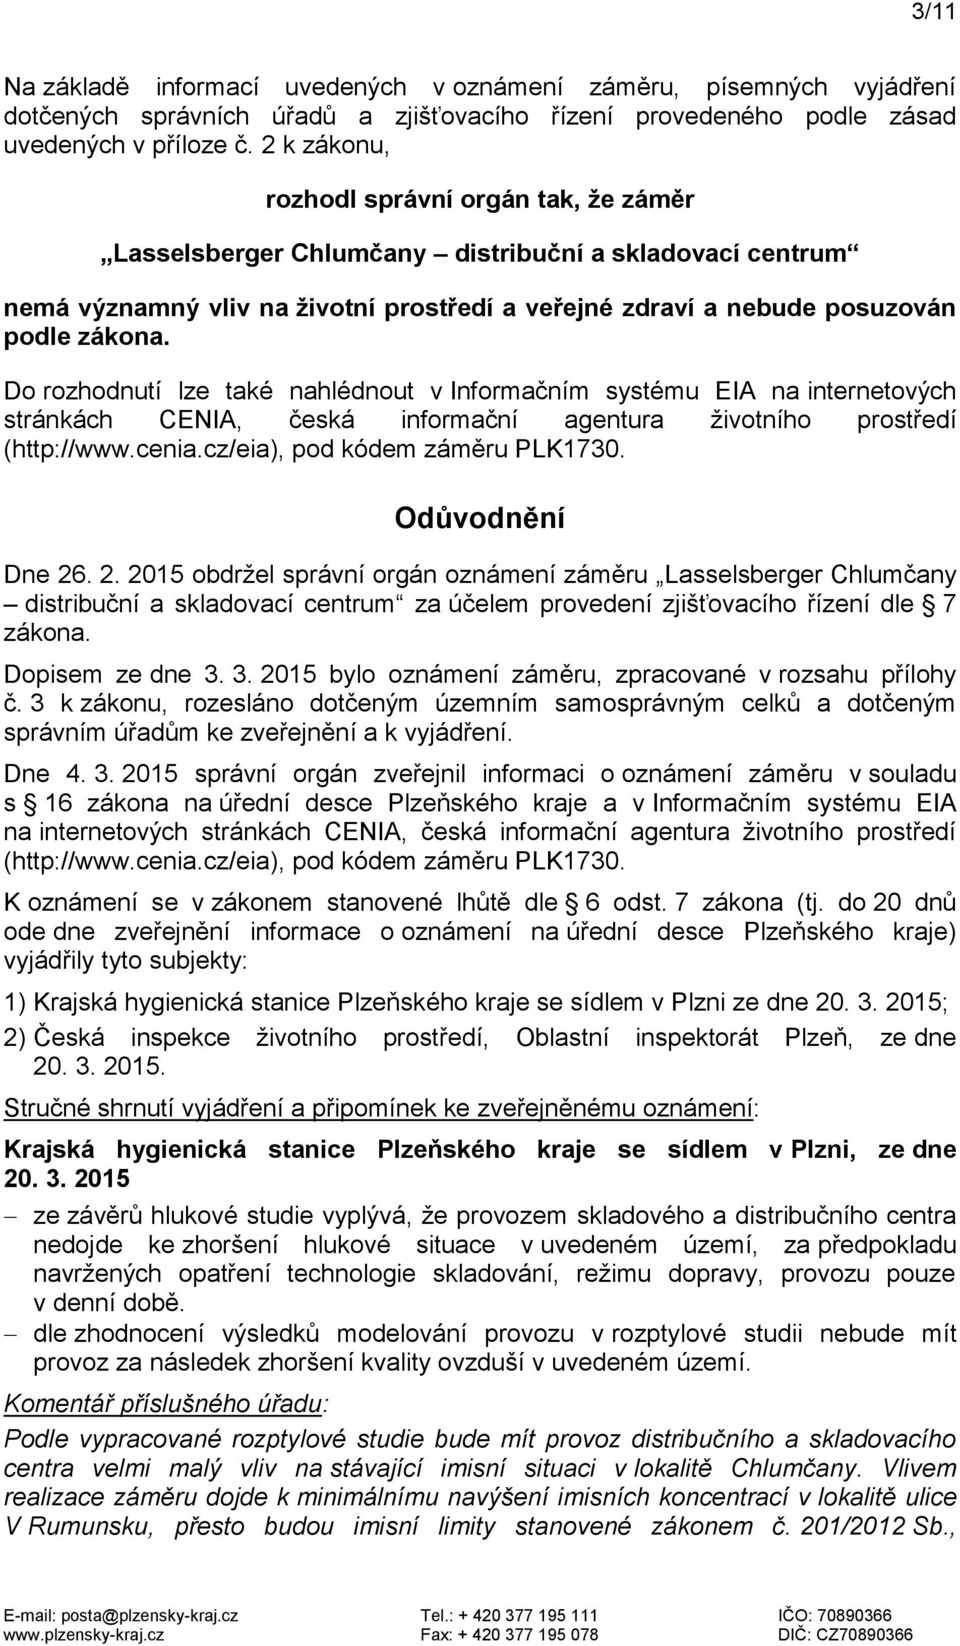 Do rozhodnutí lze také nahlédnout v Informačním systému EIA na internetových stránkách CENIA, česká informační agentura životního prostředí (http://www.cenia.cz/eia), pod kódem záměru PLK1730.